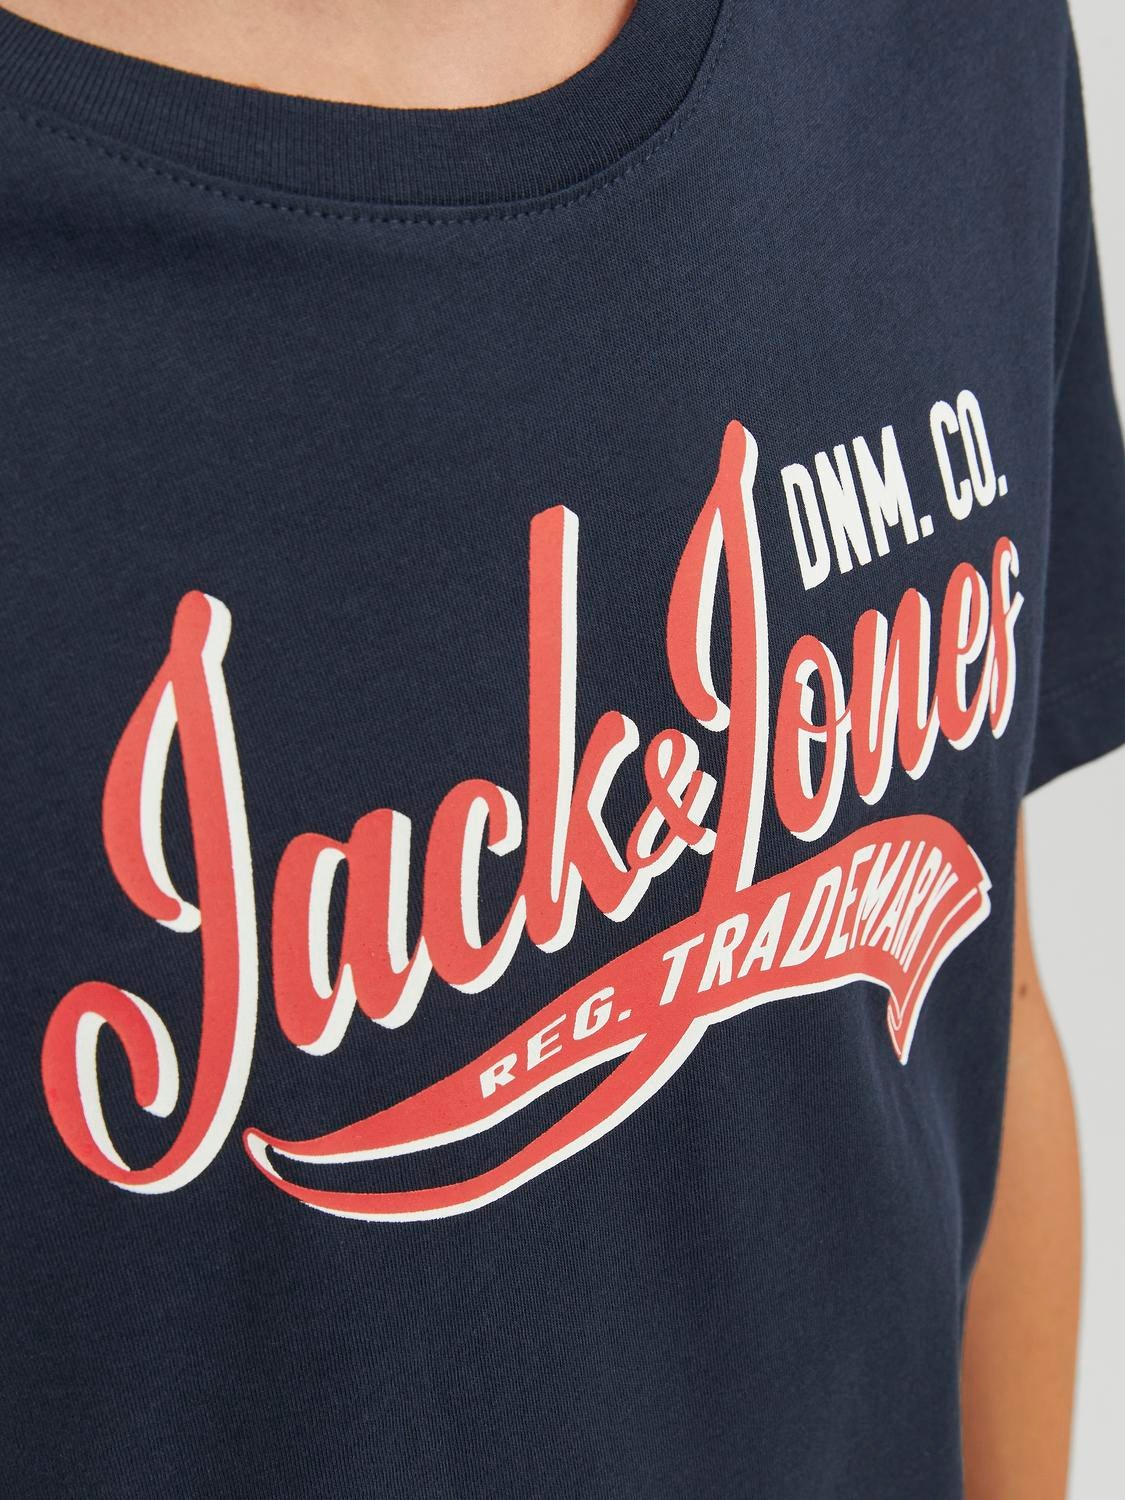 Jack & Jones Trykk T-skjorte For gutter -Navy Blazer - 12237367